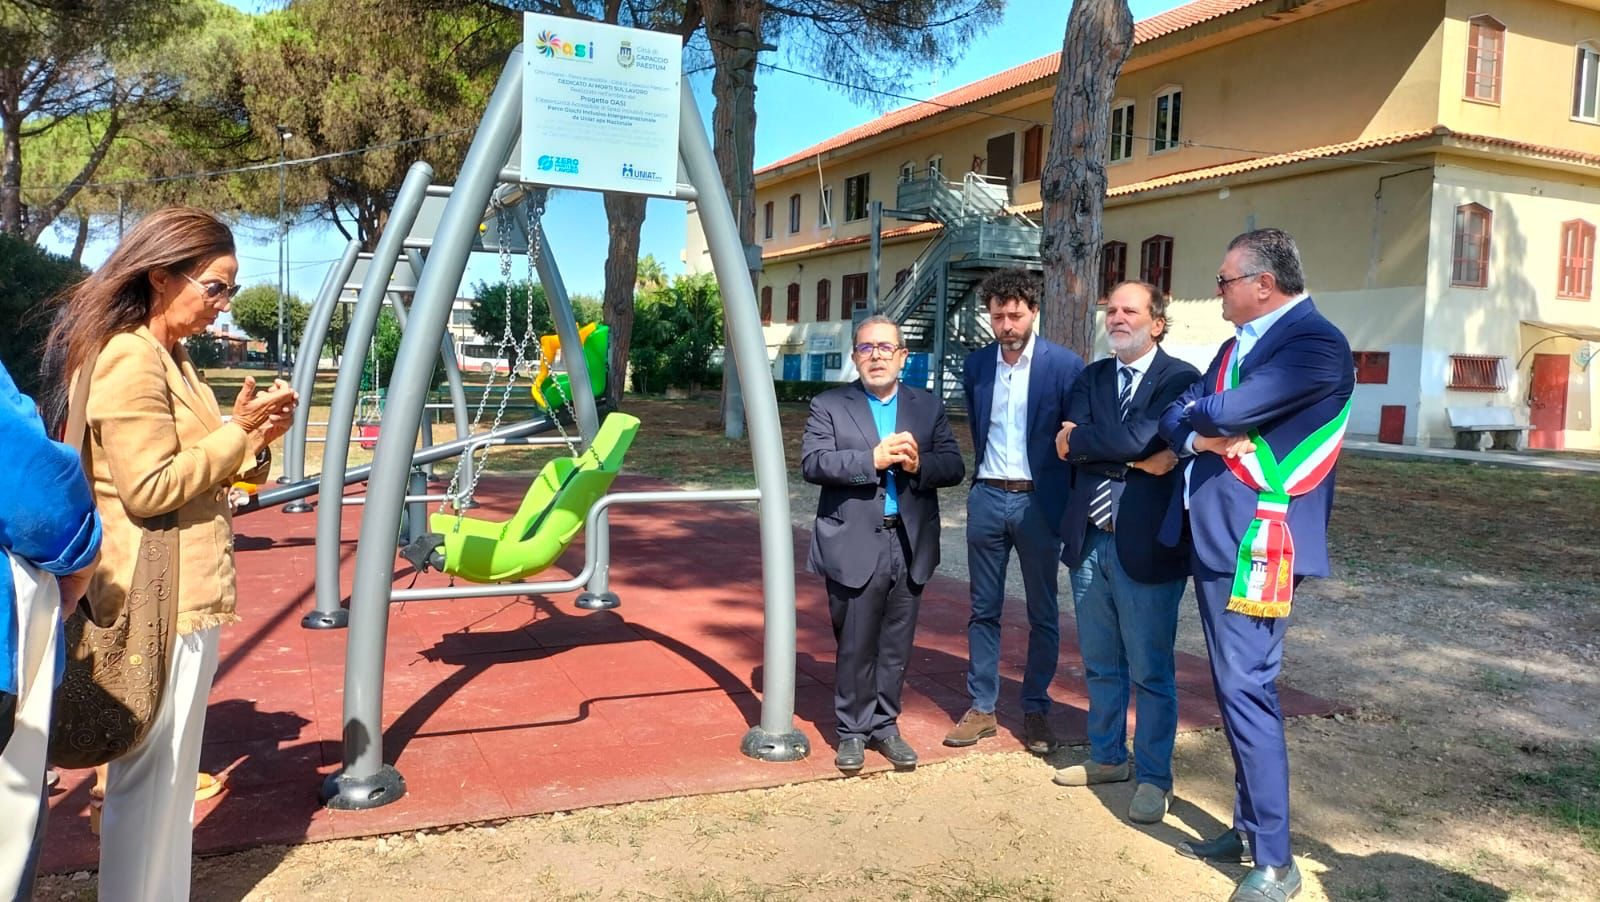 Capaccio Paestum con Agropoli tra i Comuni in Italia con il parco giochi inclusivo